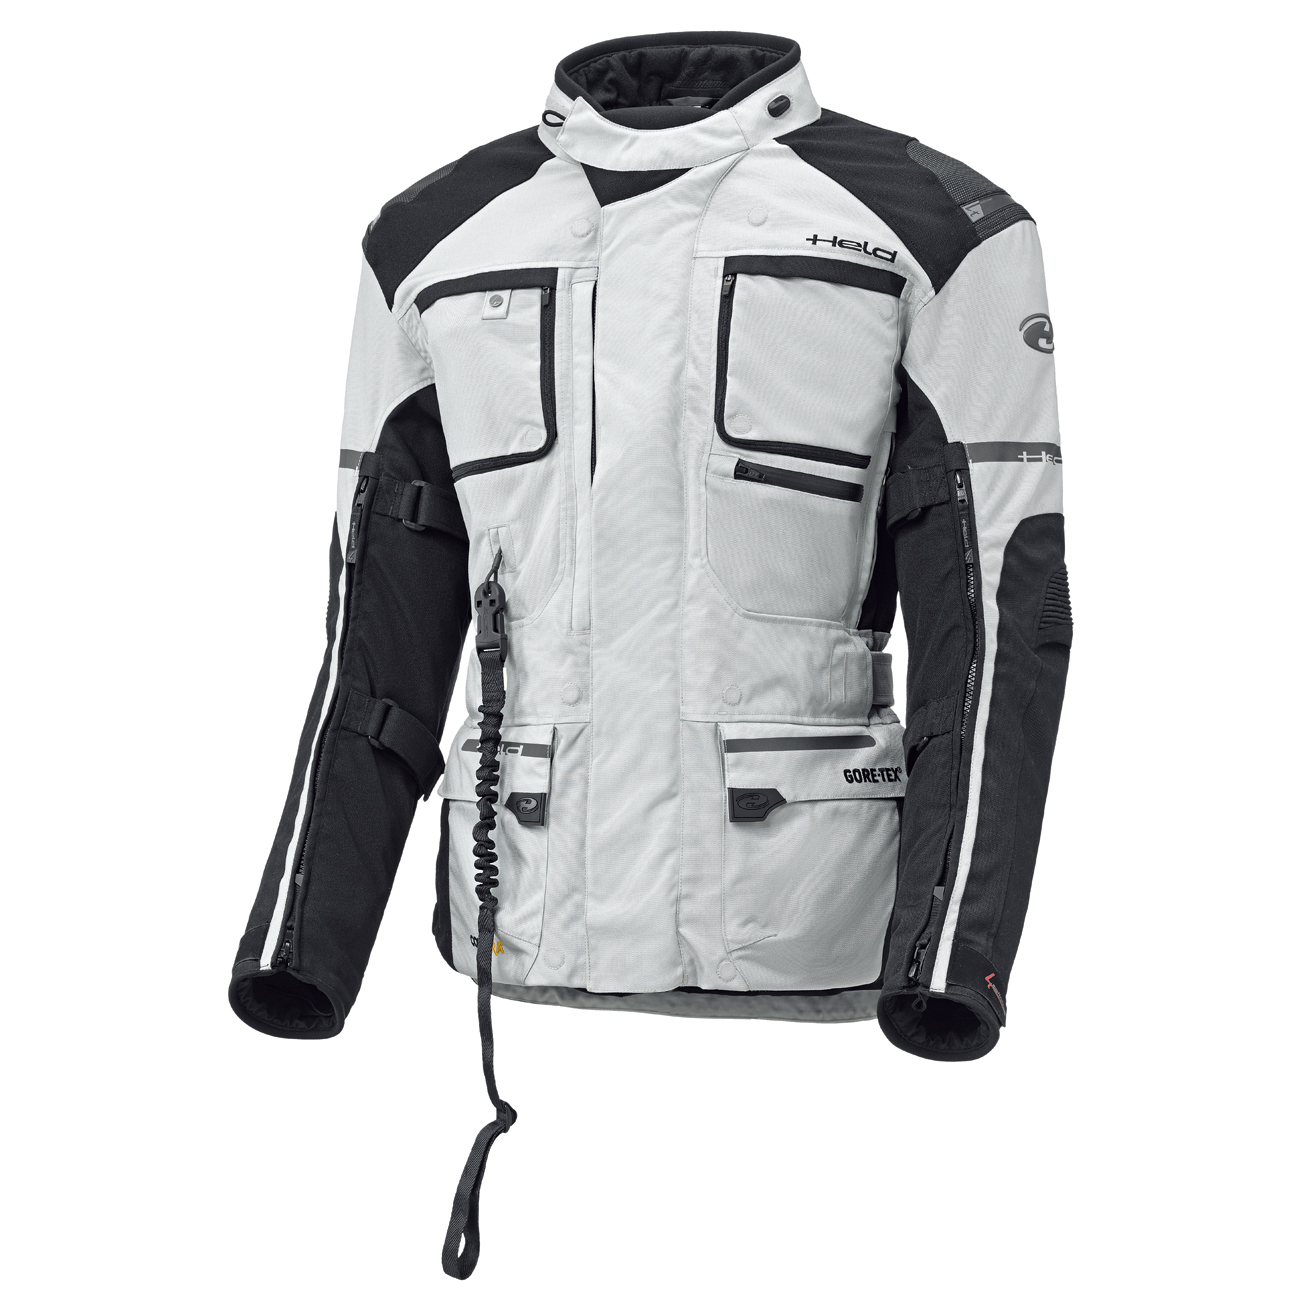 Carese APS GORE-TEX® Touring jacket